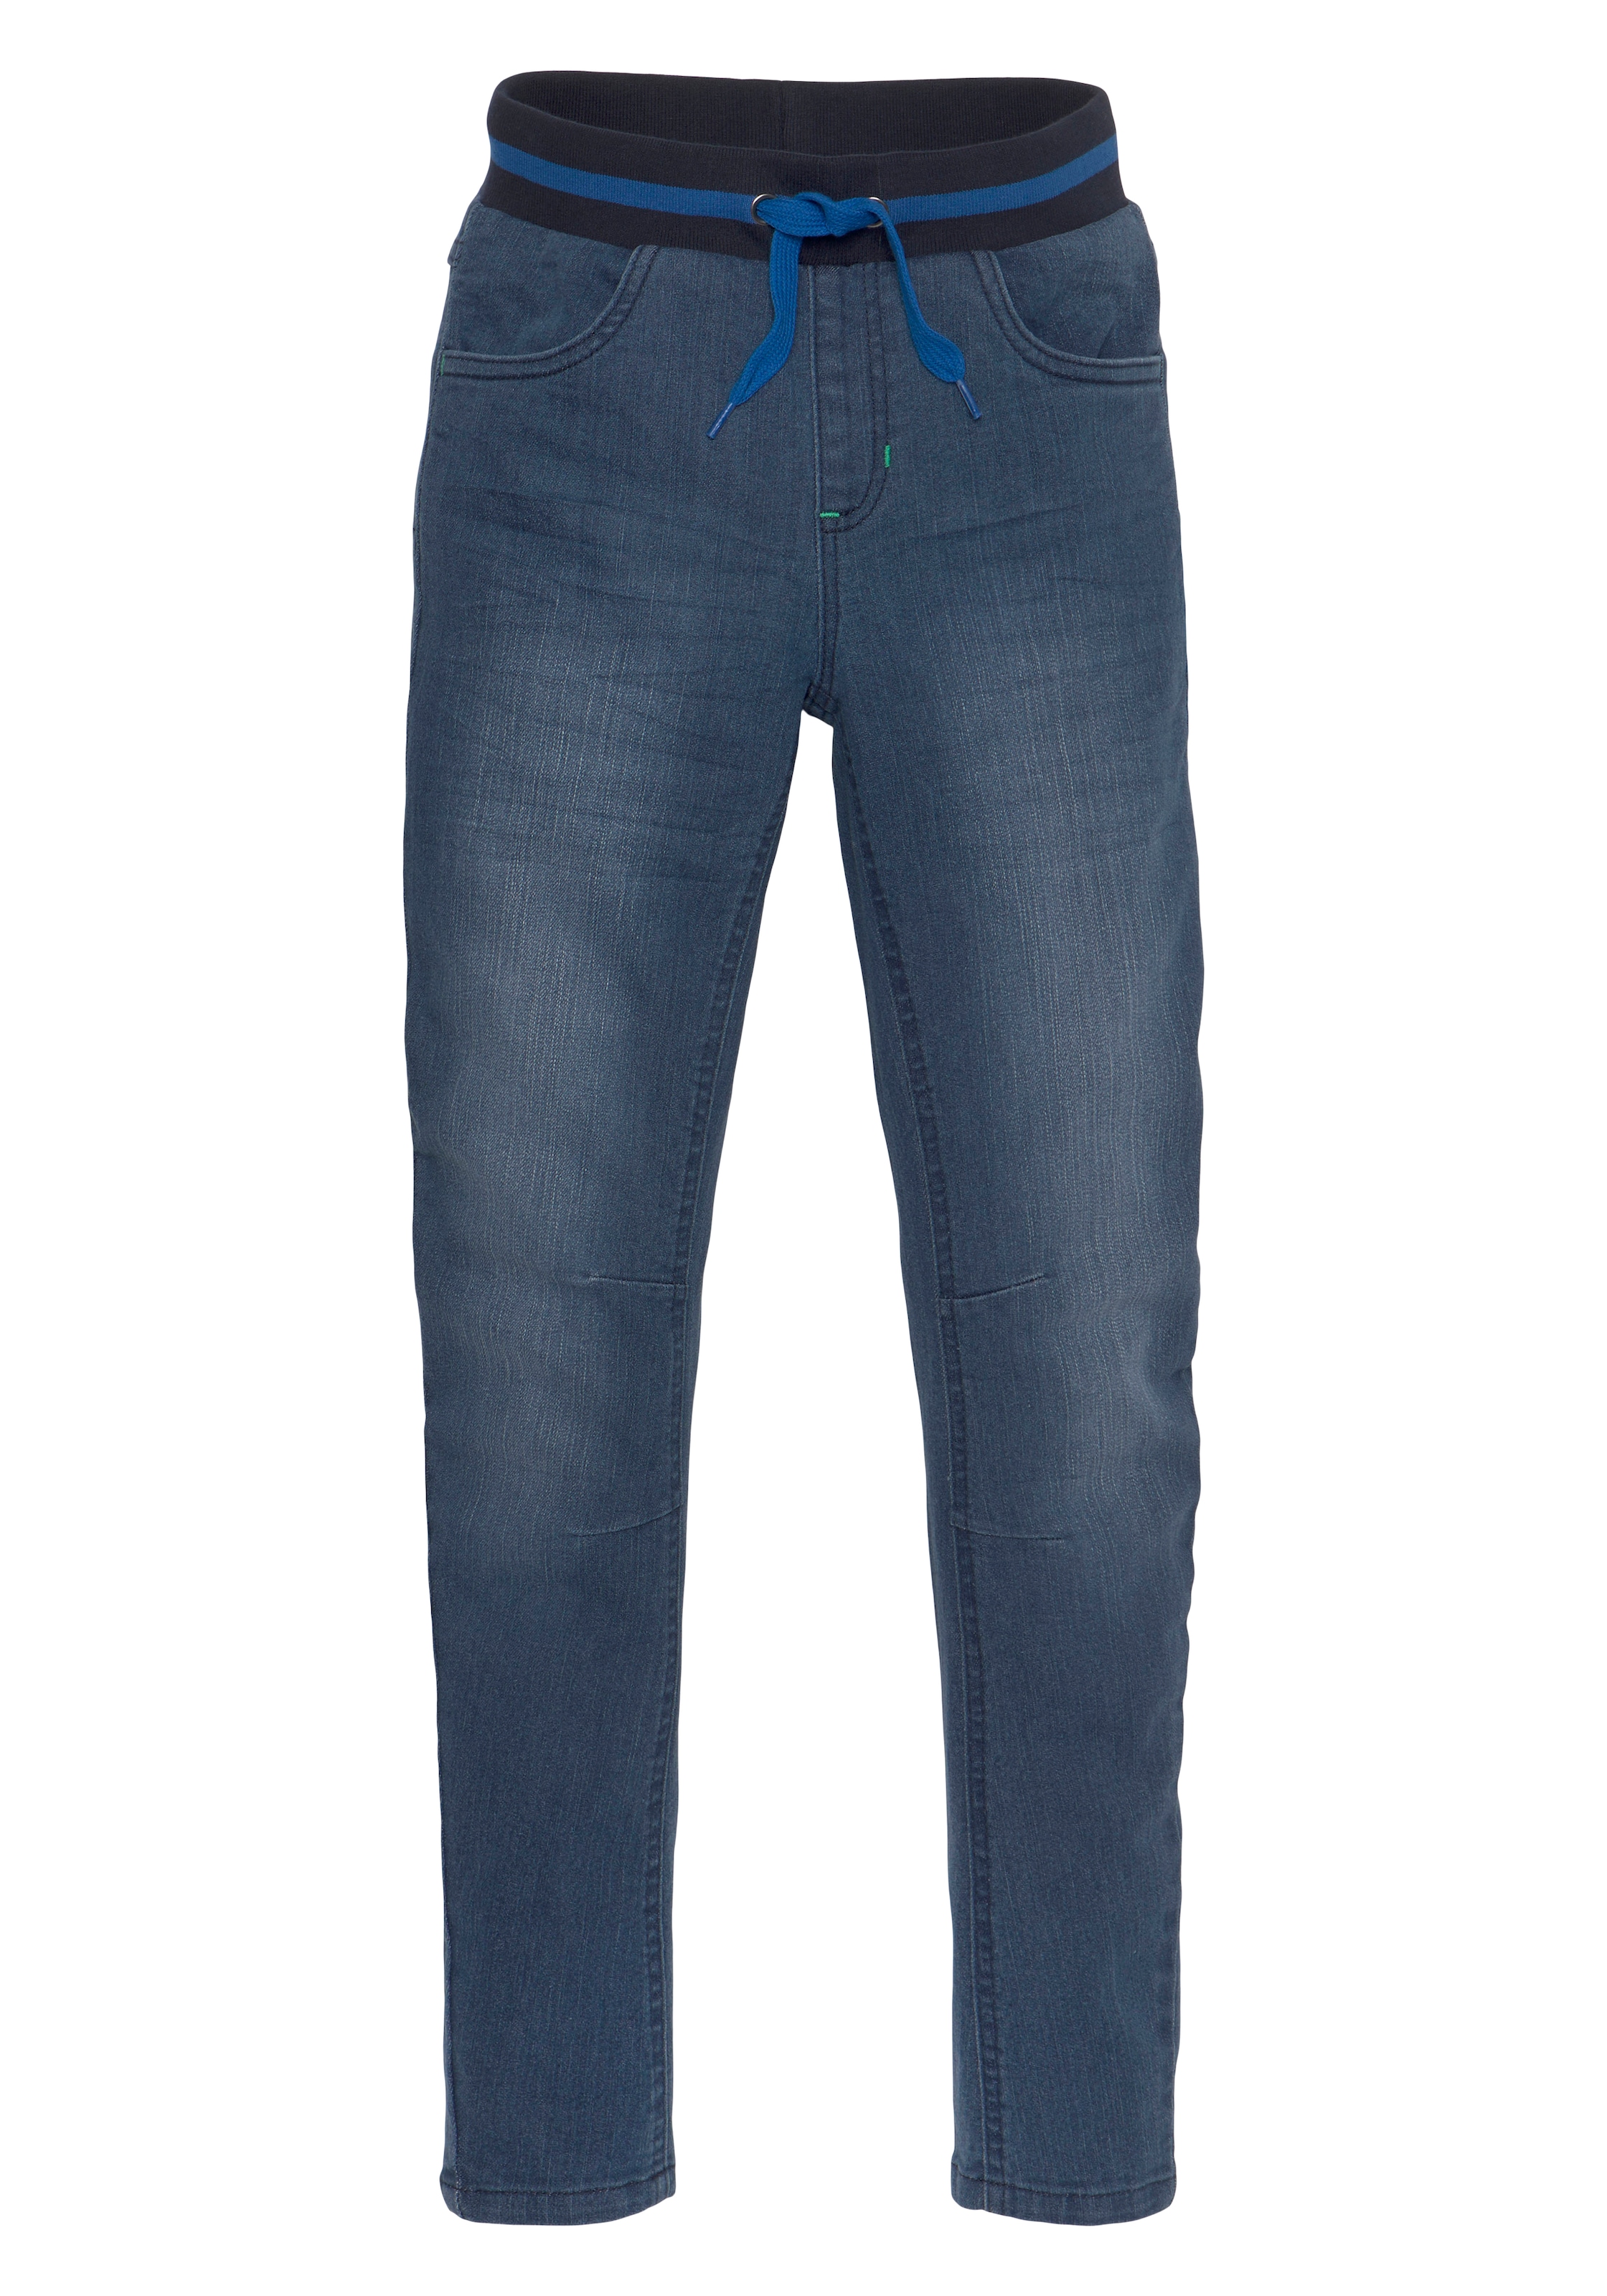 OTTO in KangaROOS bei bestellen »Denim«, authentischer Stretch-Jeans Waschung